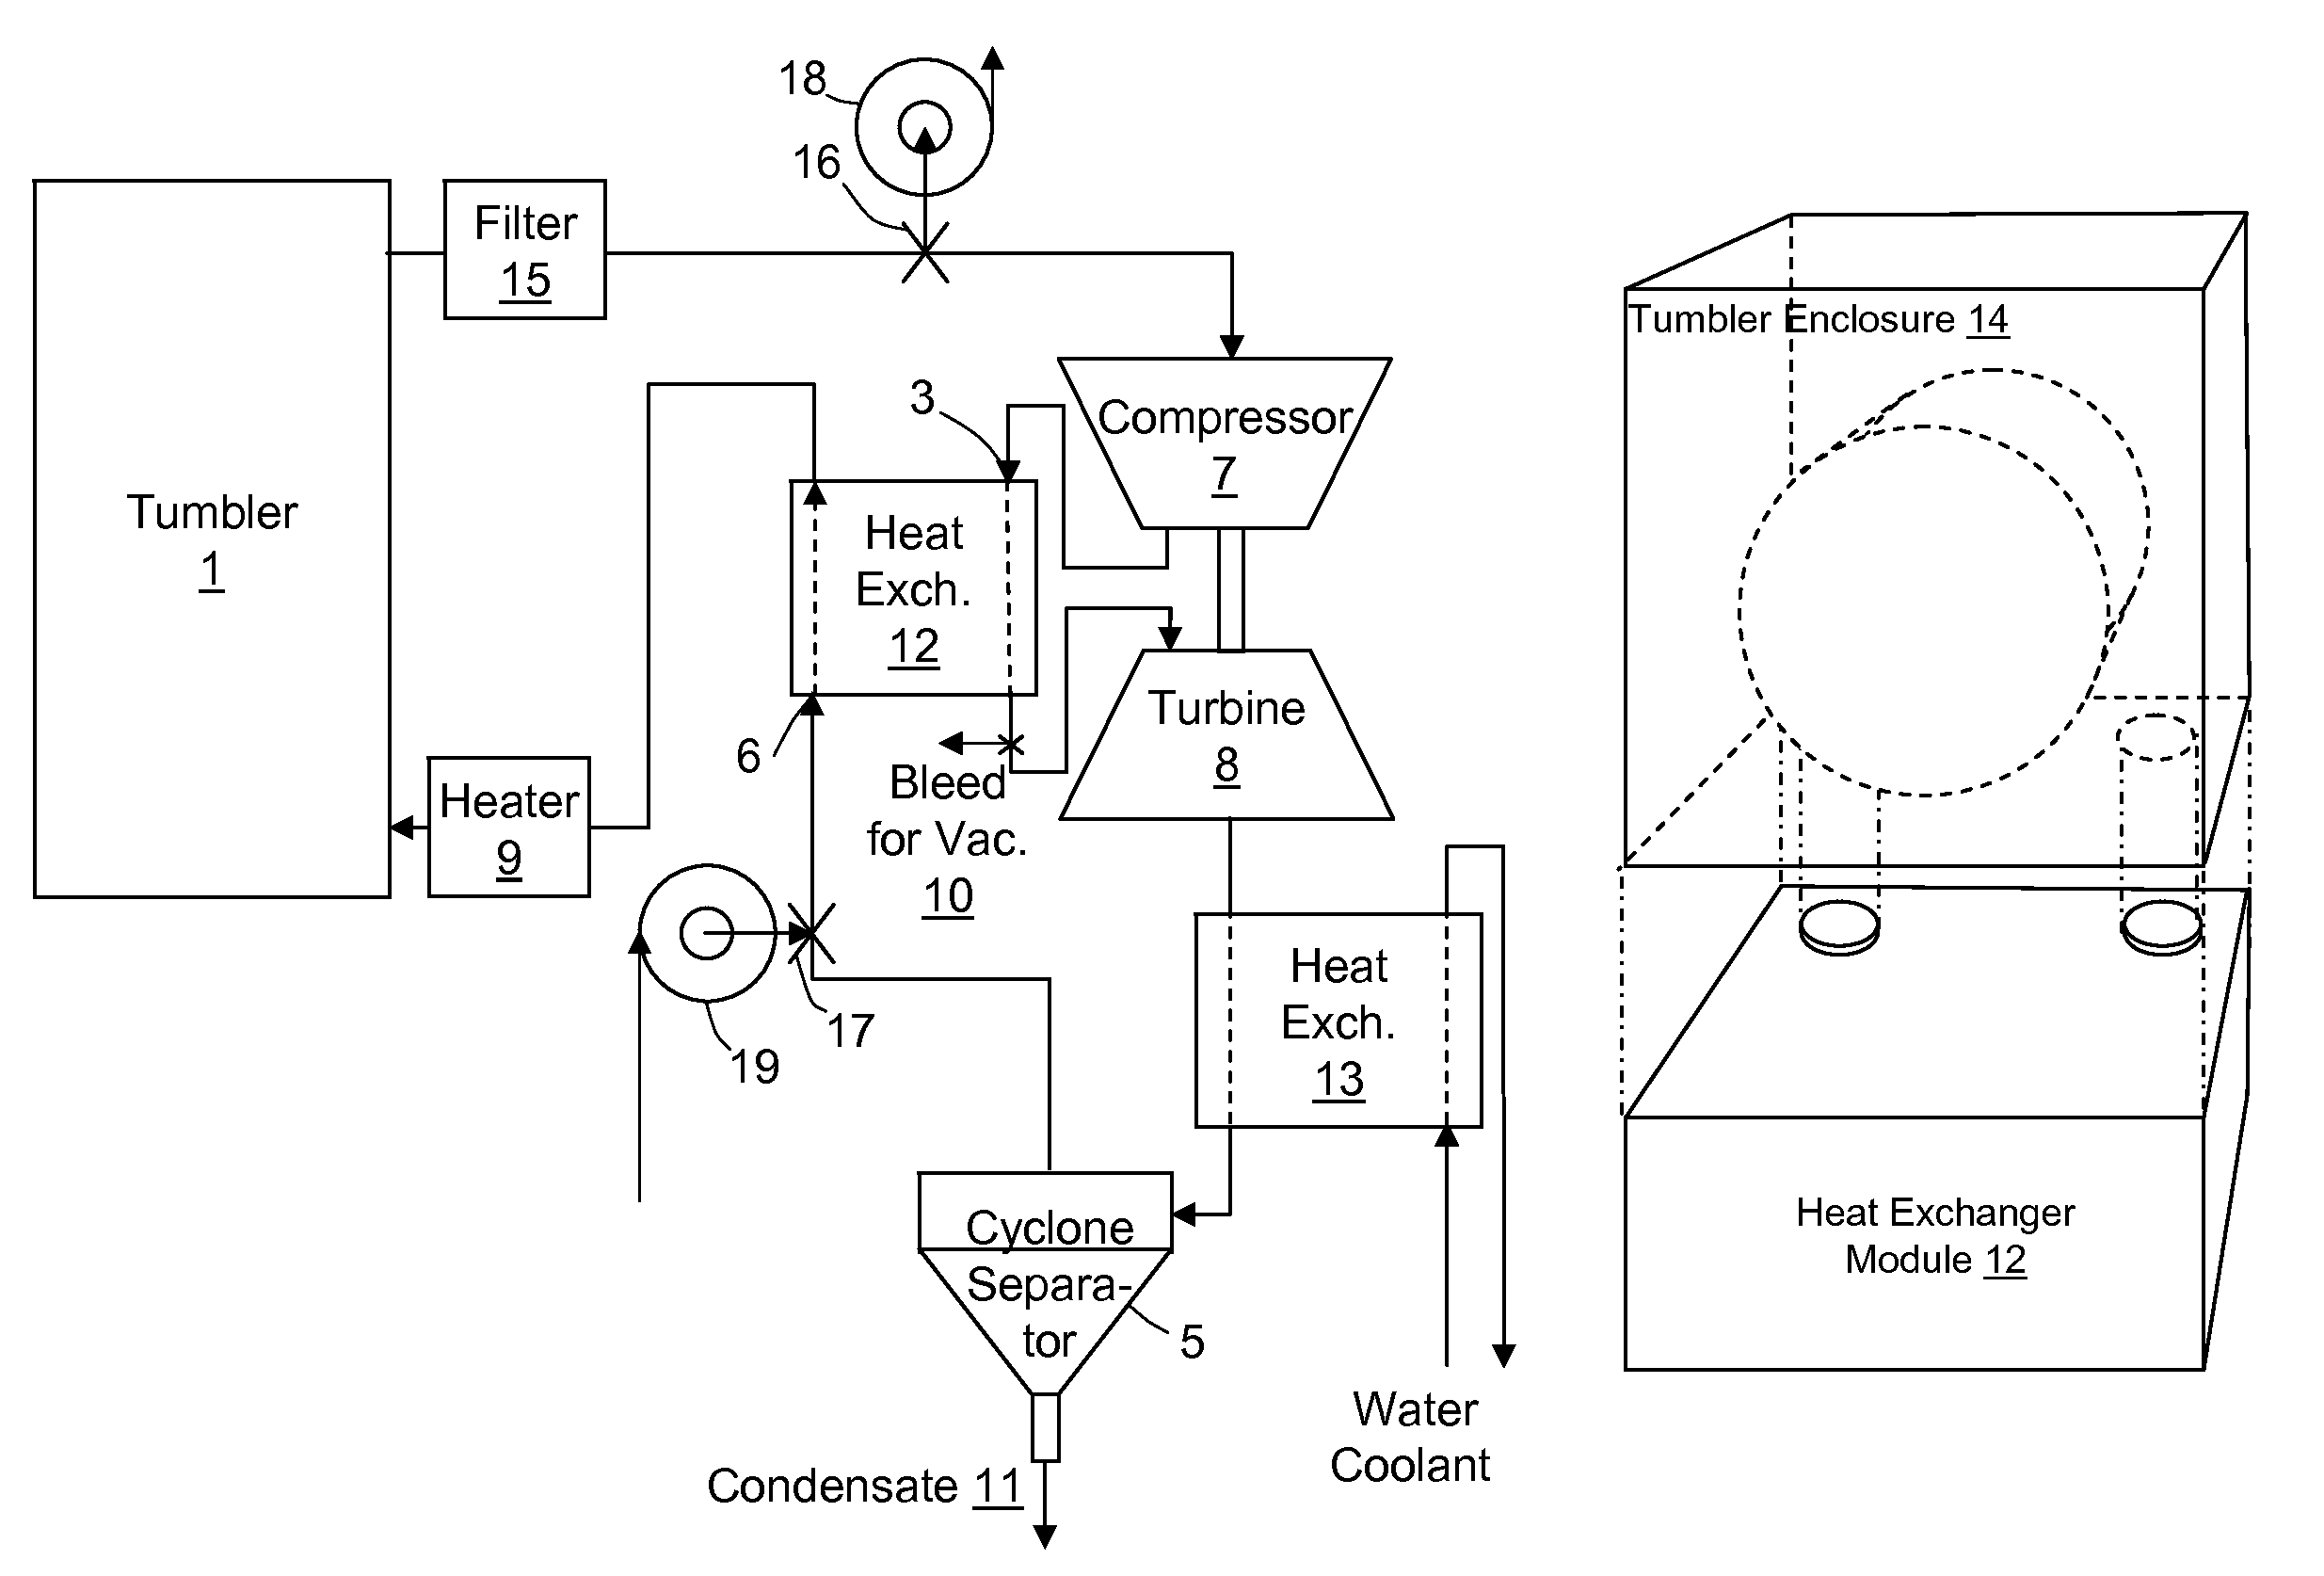 Air cycle heat pump dryer